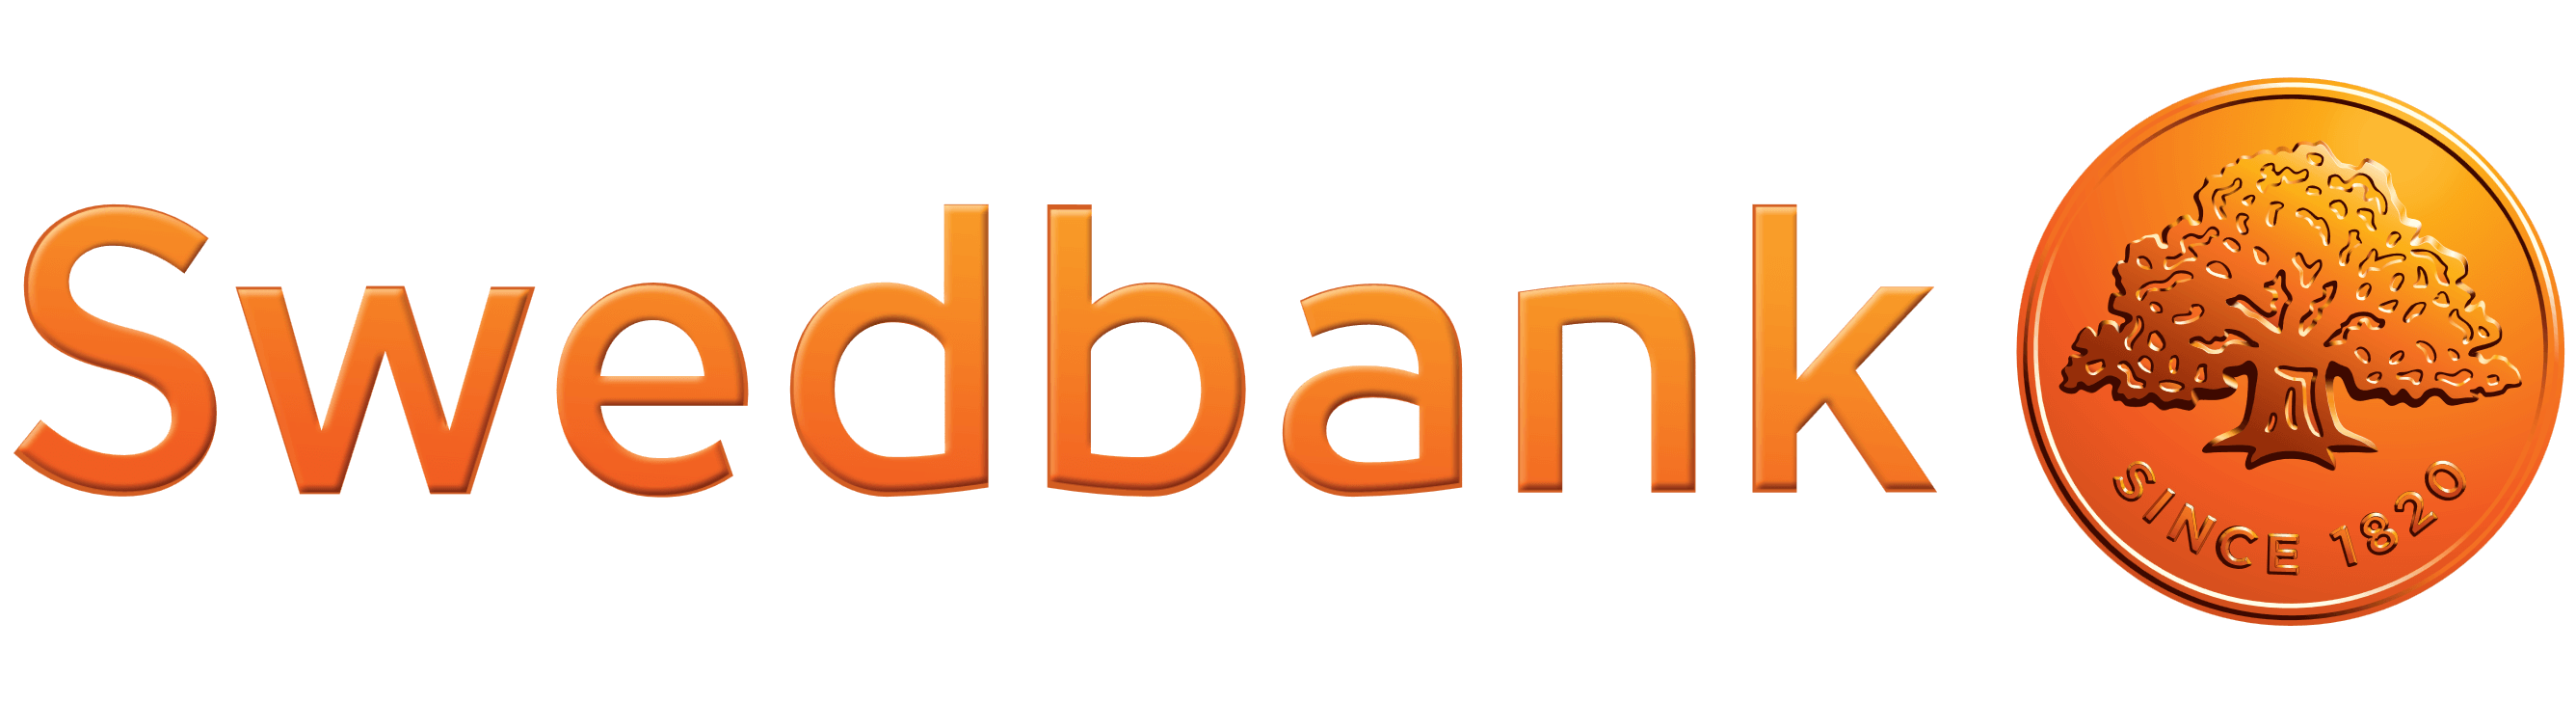 Swedbank logo, logotype